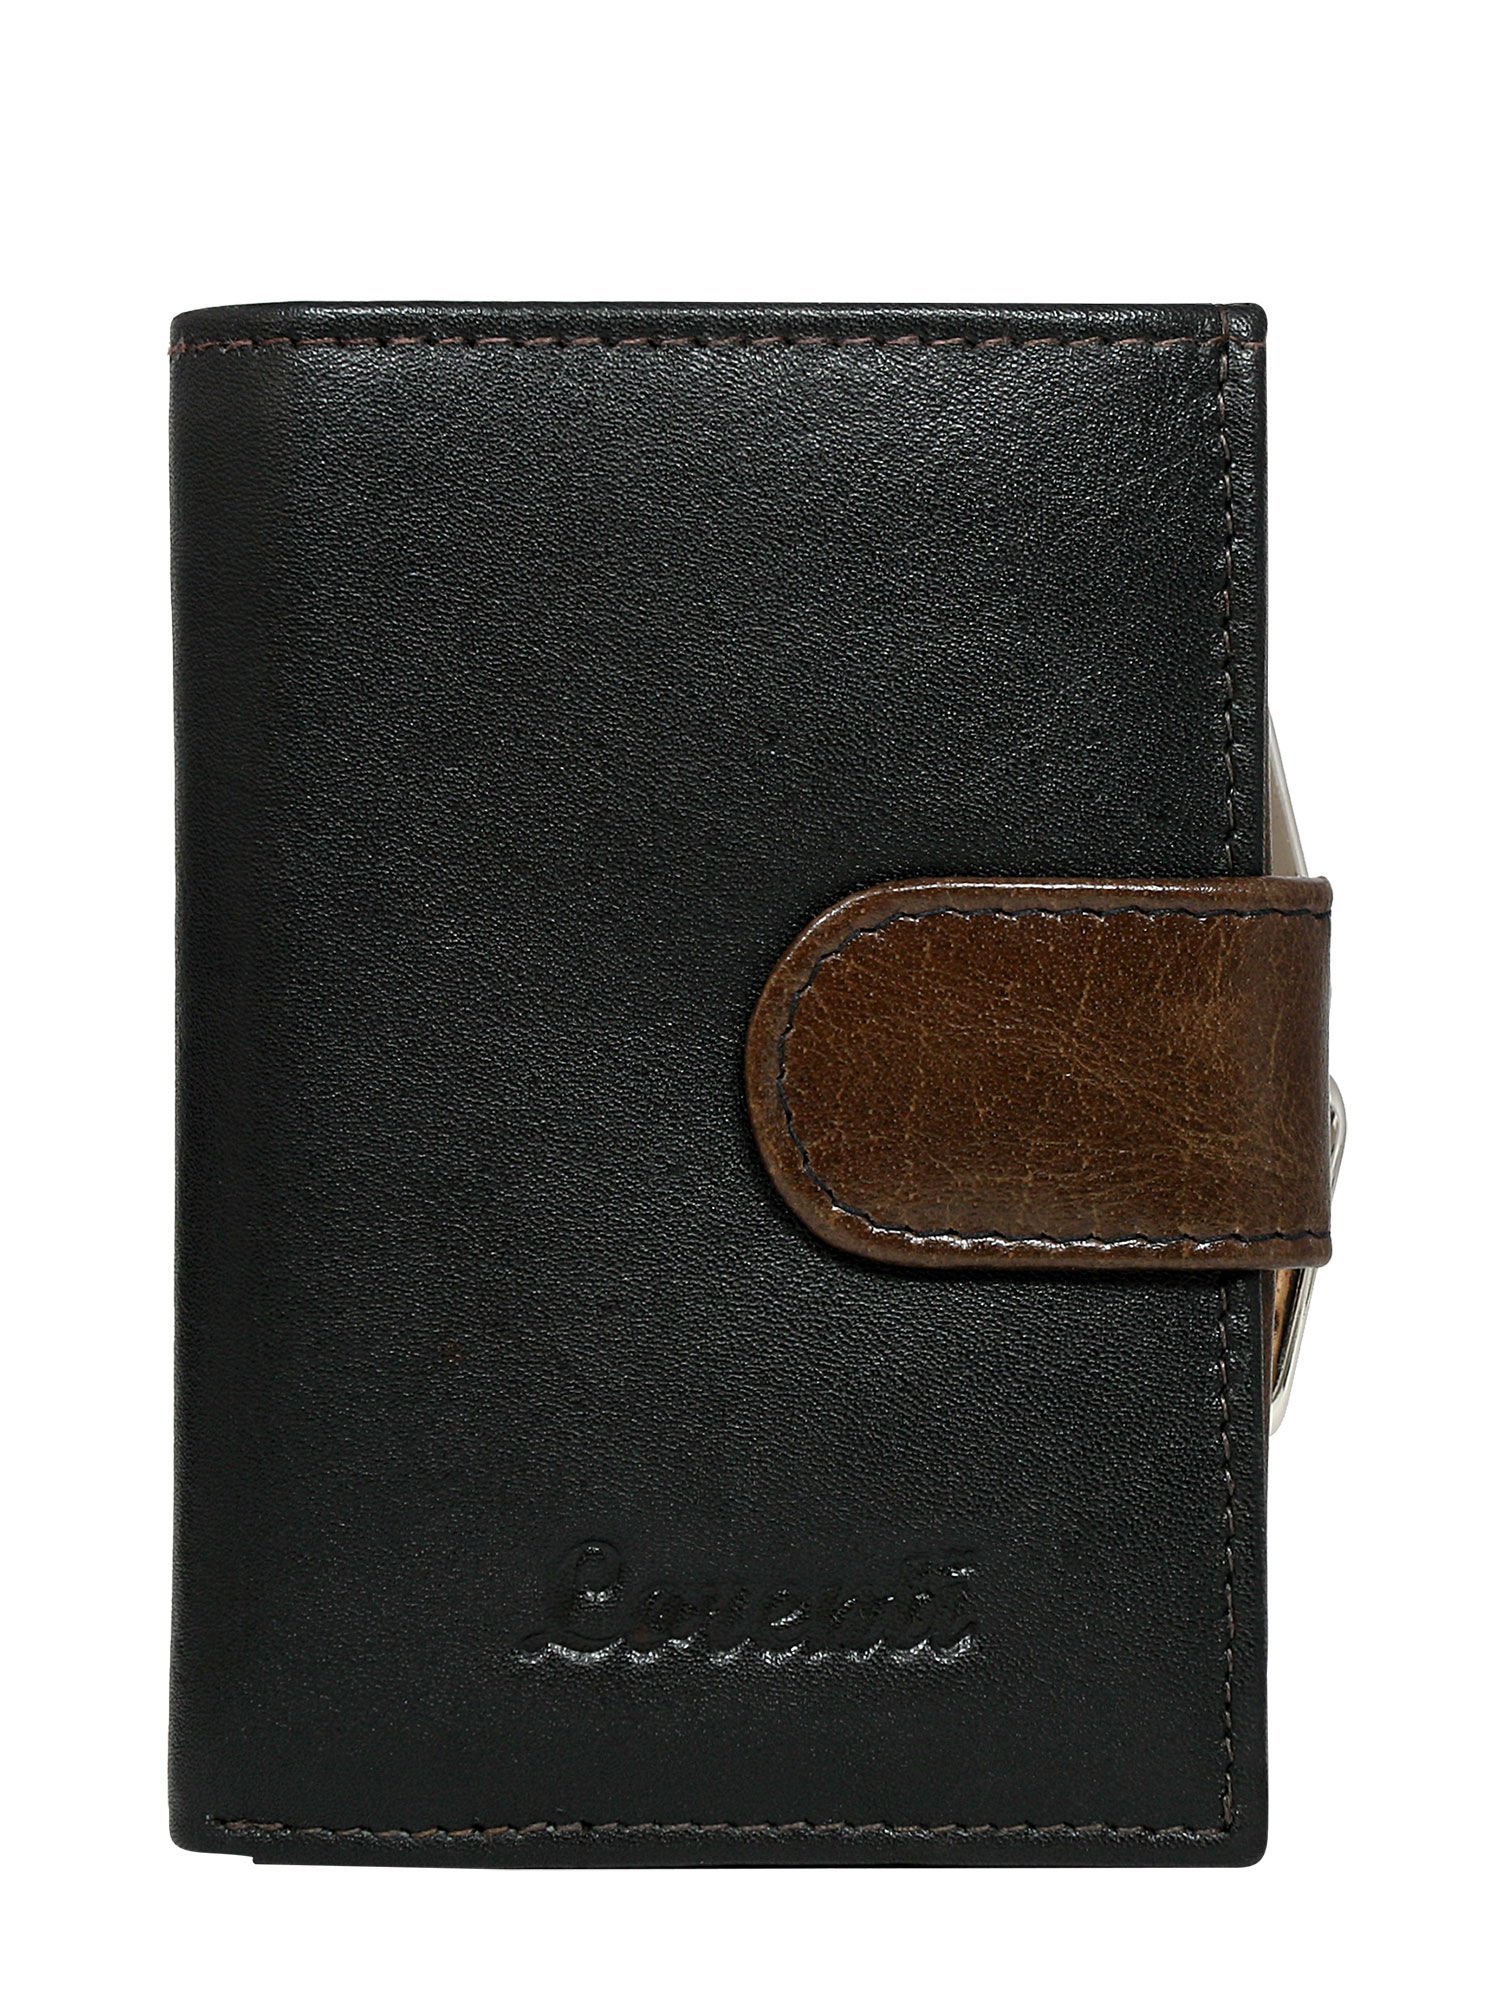 Kožená dámska hnedá peňaženka - UNI